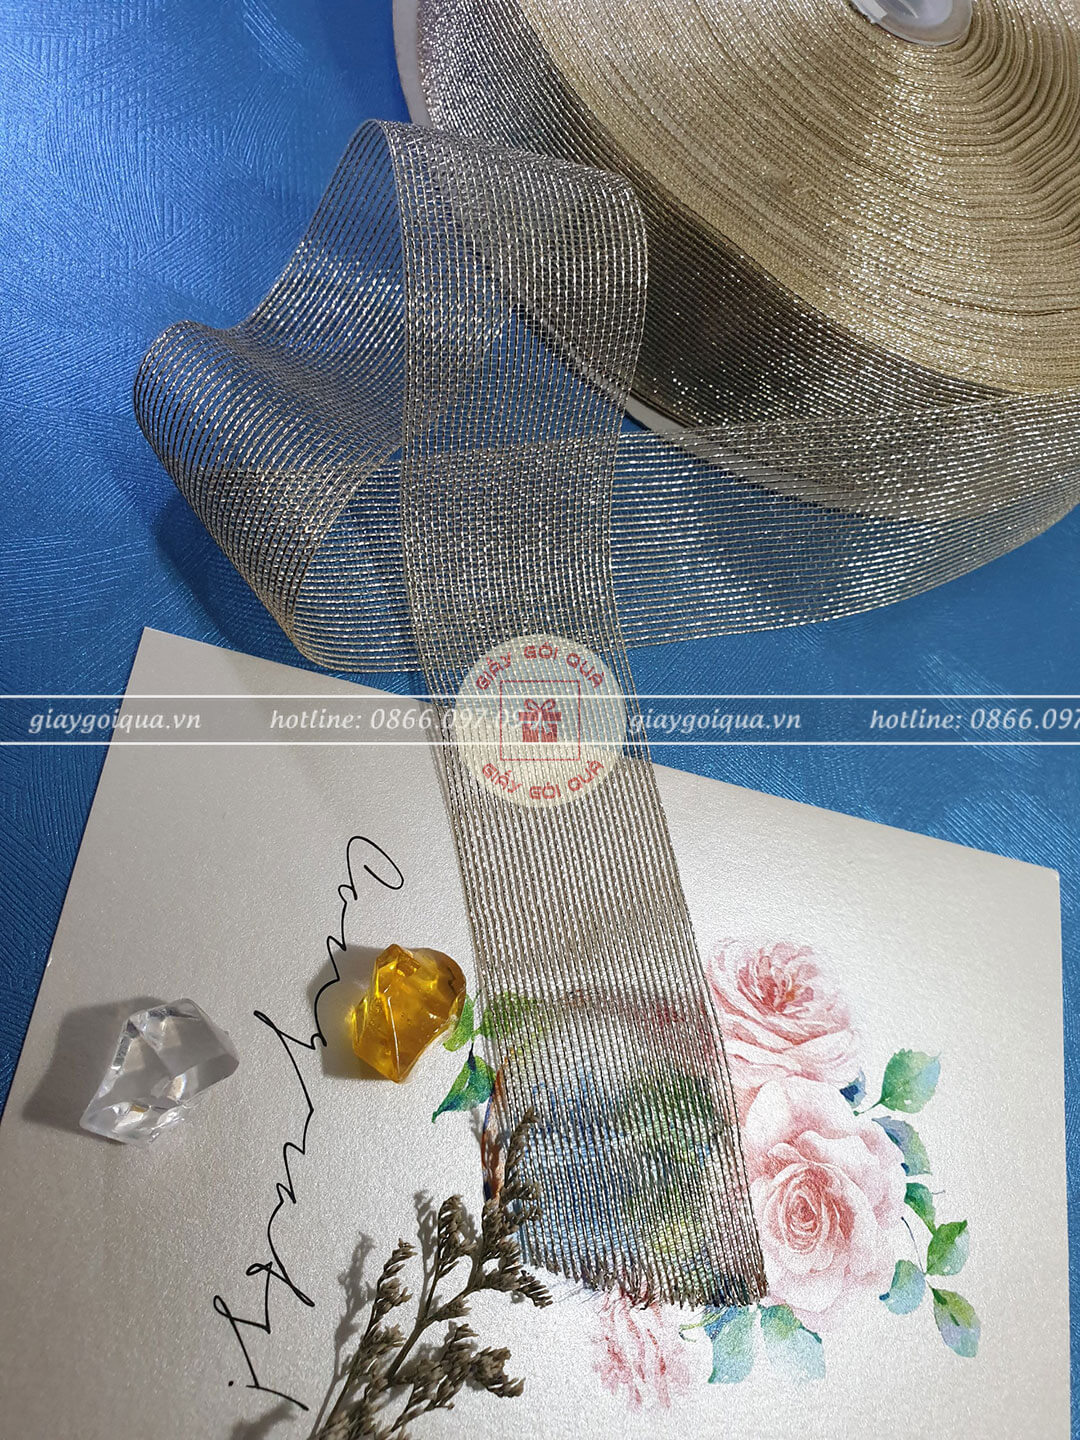 Một số mẫu giấy lụa gói quà đẹp tại Thiệp Sinh Nhật